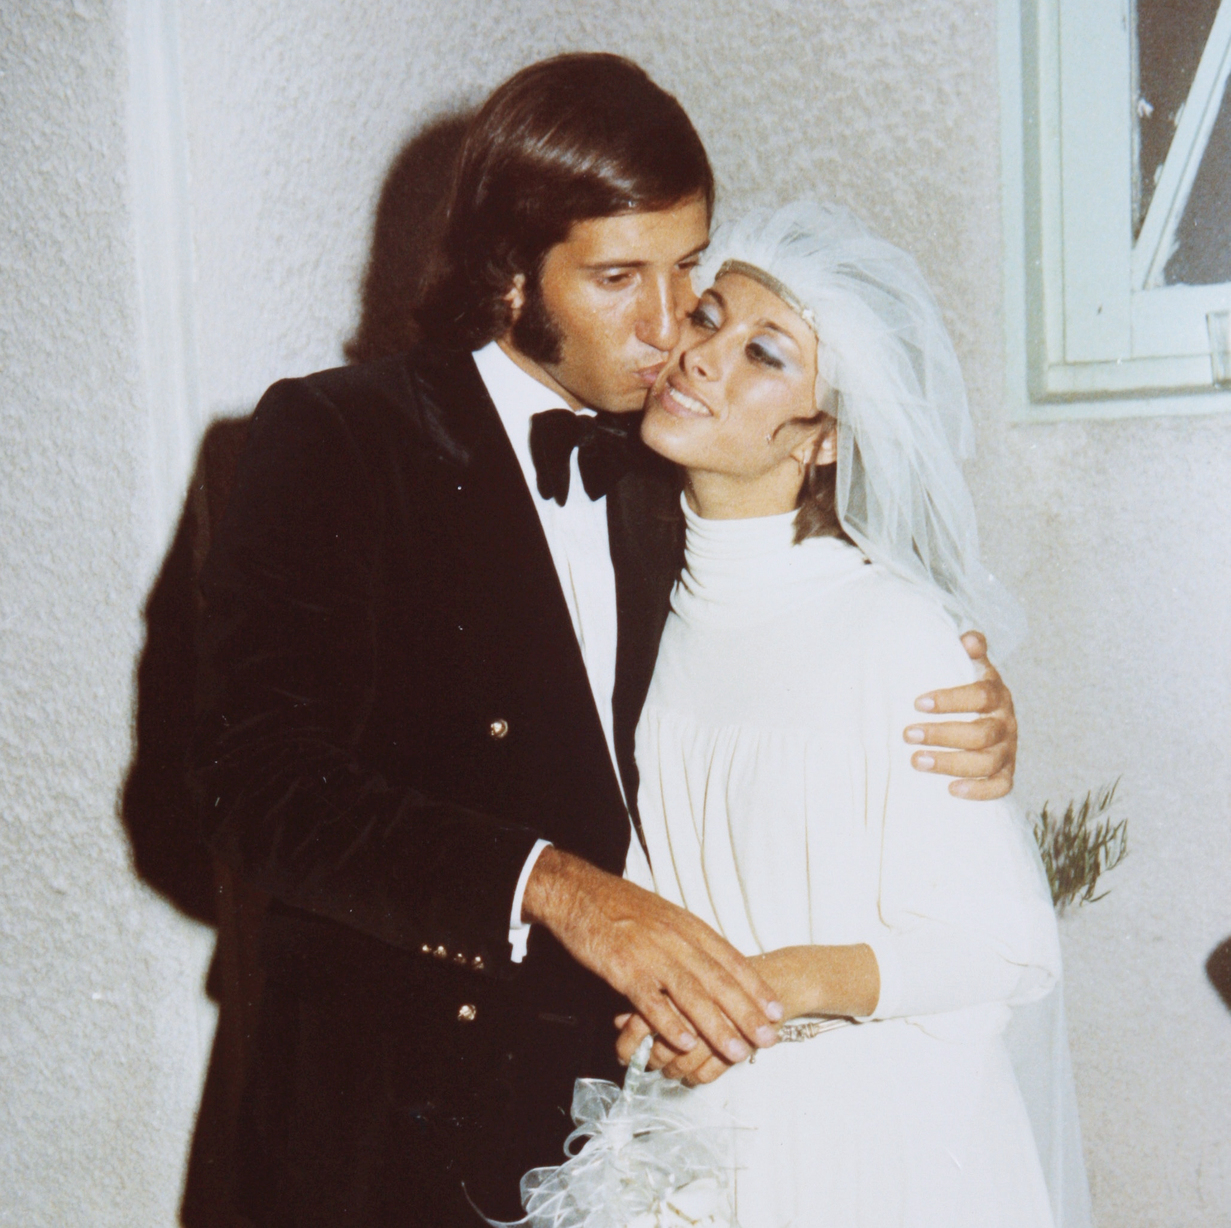 בני הזוג בחתונתם, 1972 . "השארם שלו עבד"